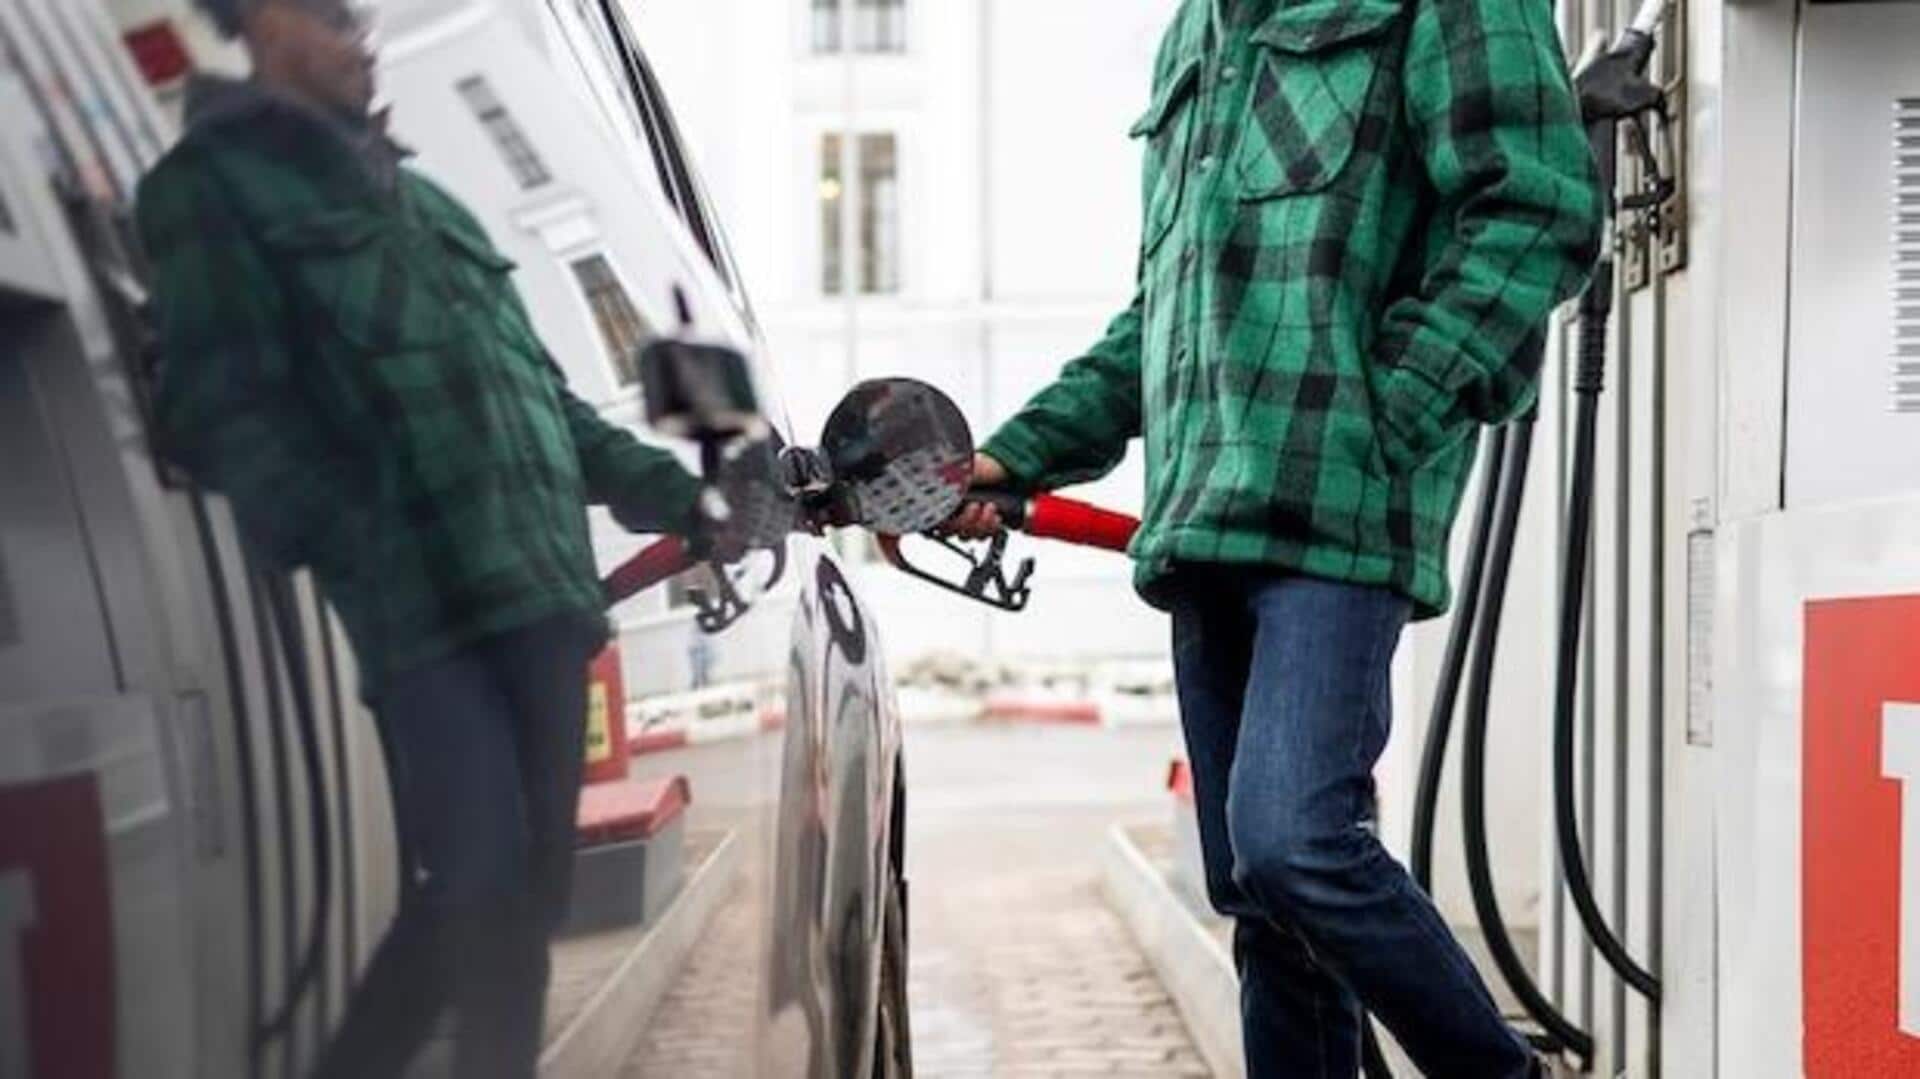 पेट्रोल-डीजल की कीमत: देश के प्रमुख शहरों में कितने बदले आज के दाम? 